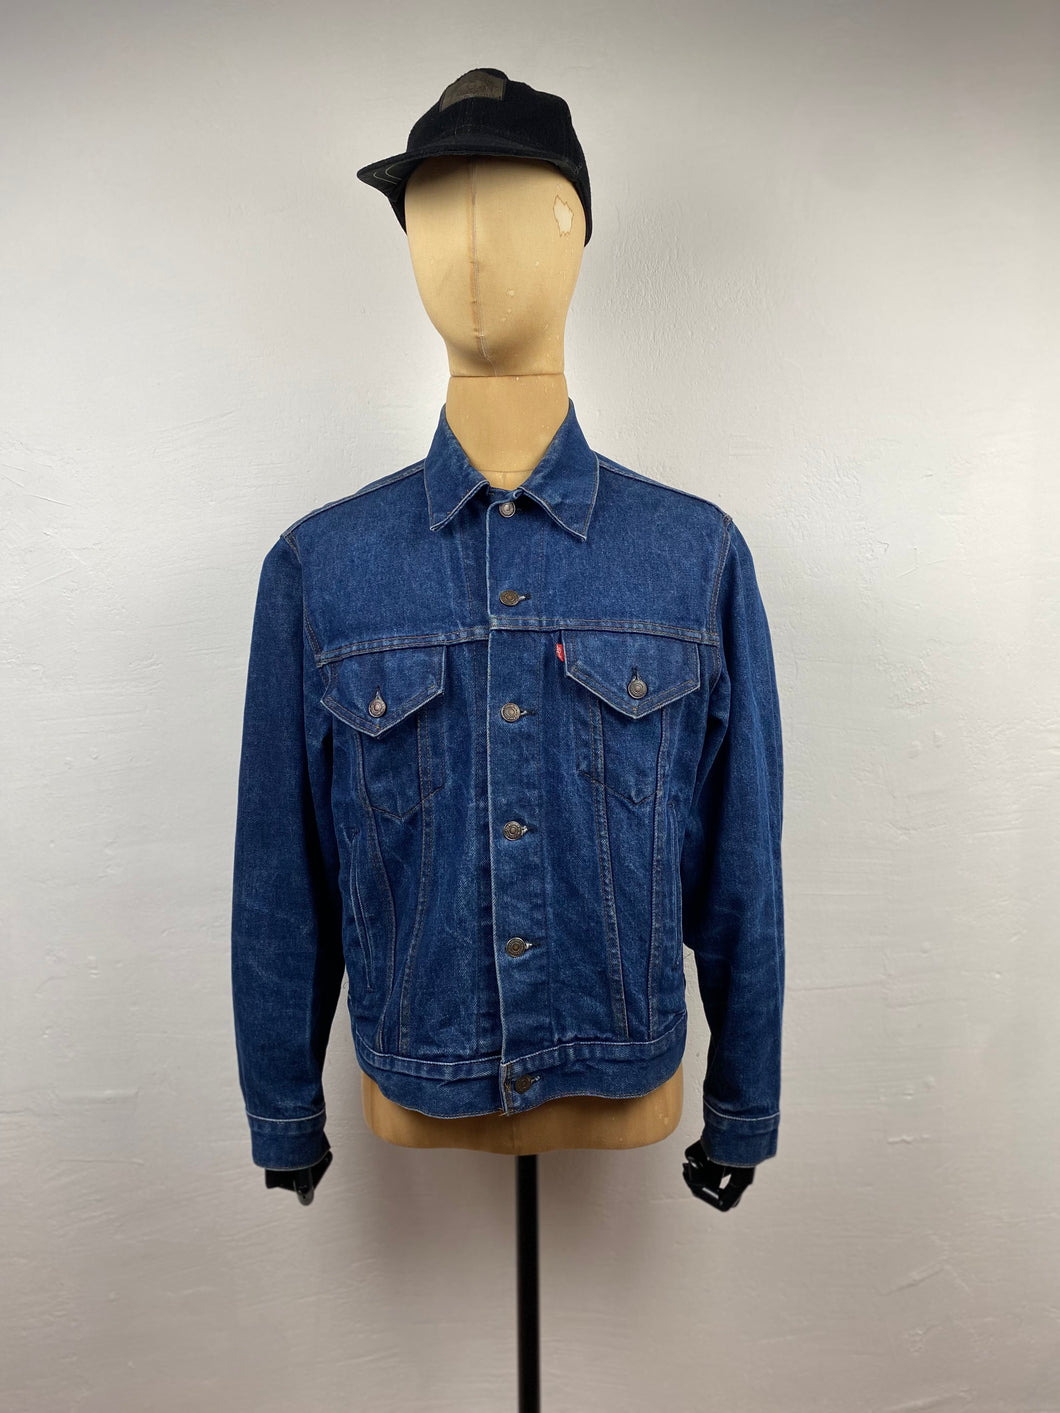 1970s Levis jeans jacket